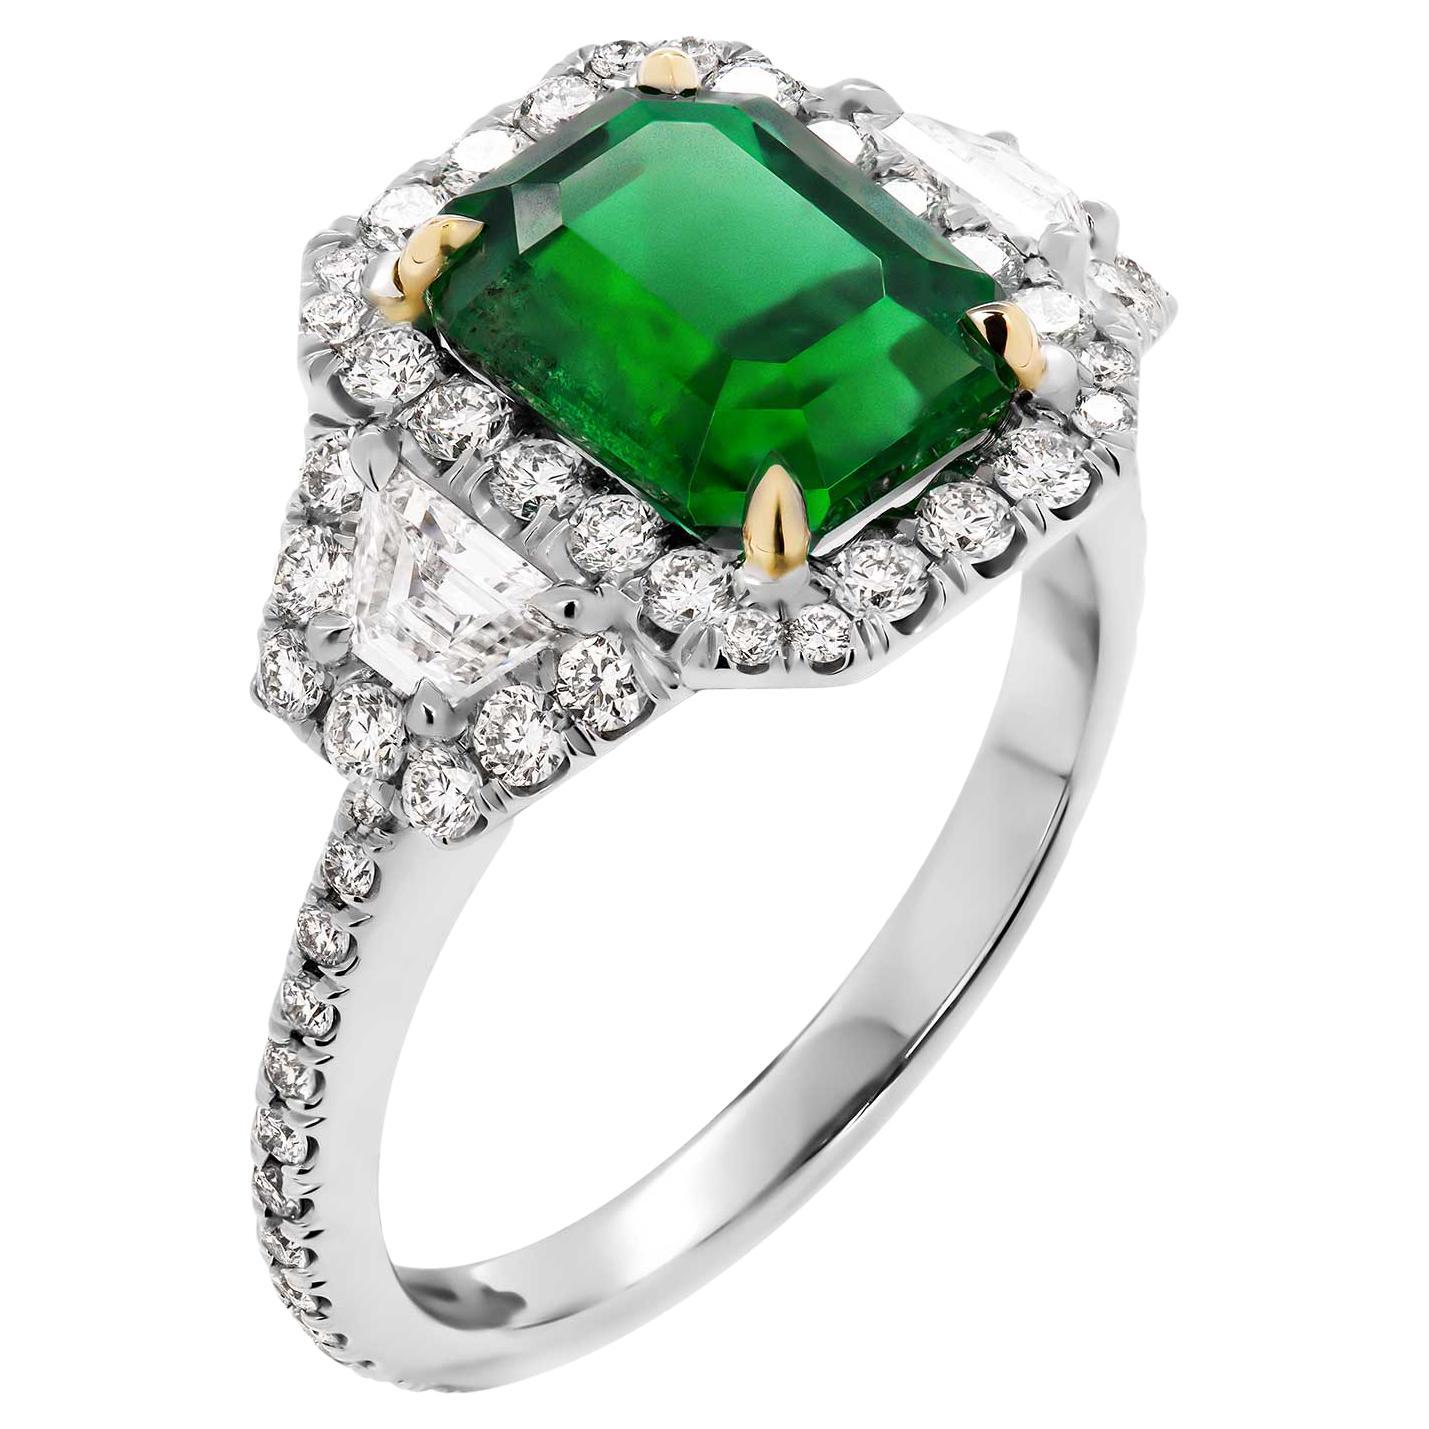 GIA-zertifizierter grüner Smaragd-Ring mit 3 Steinen